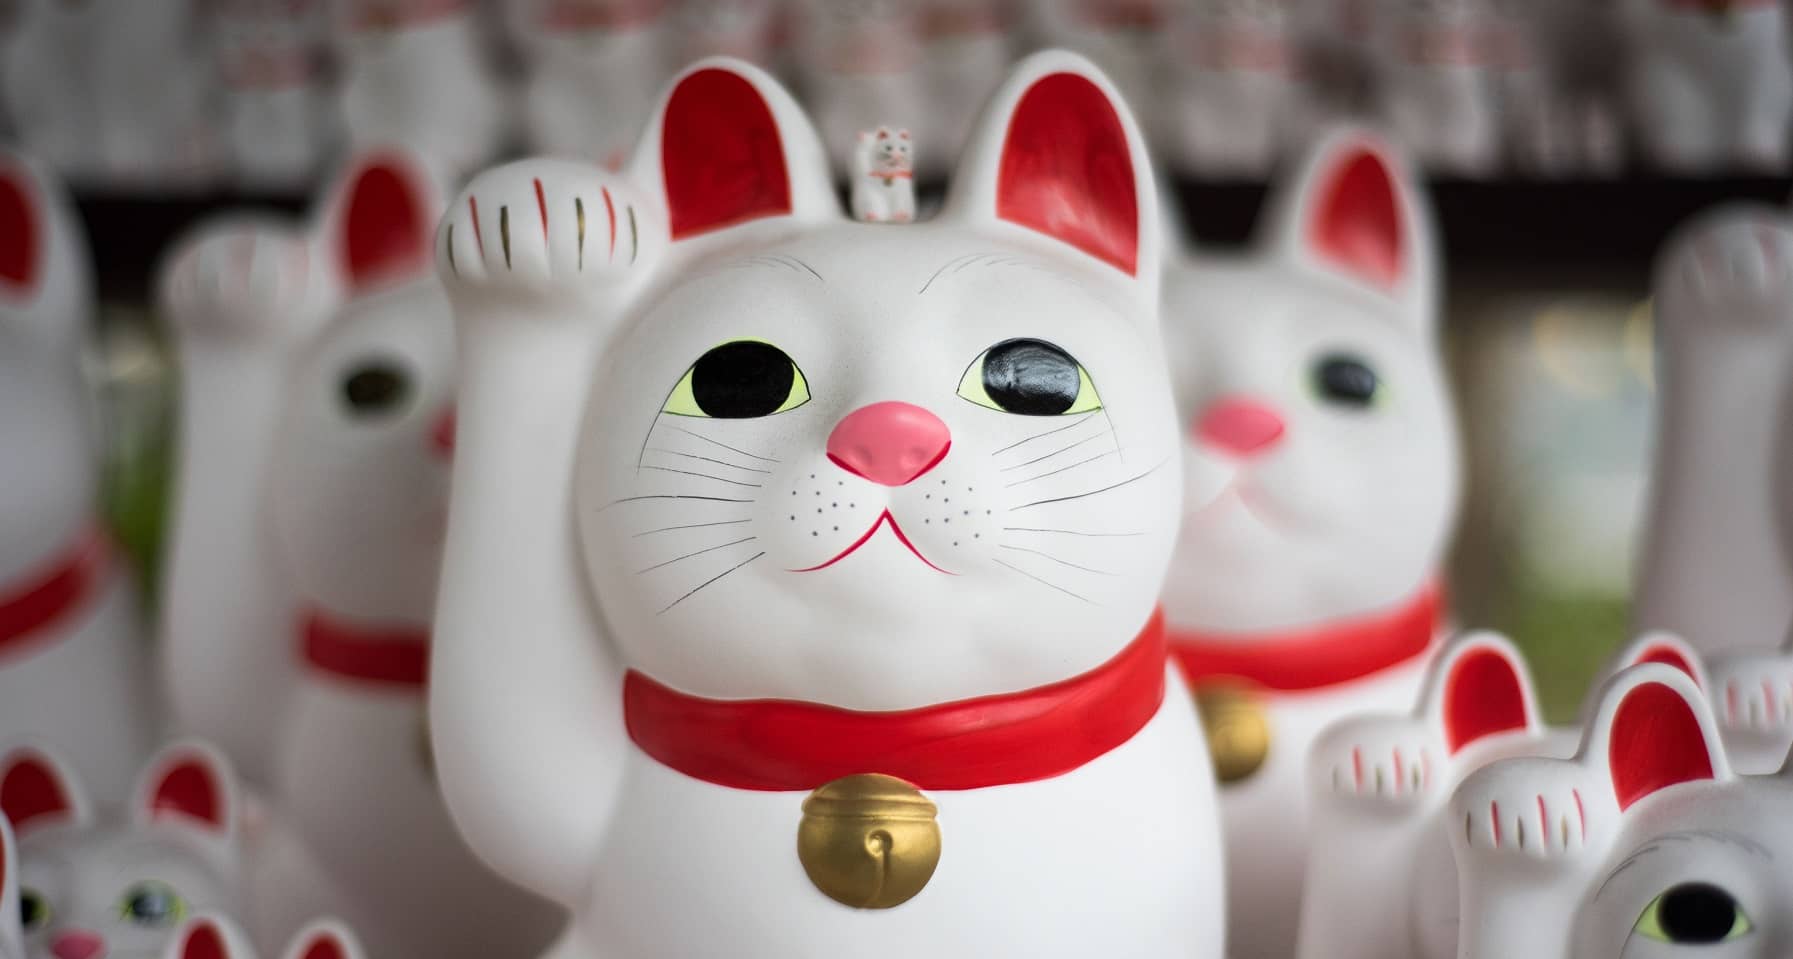 Chat chinois porte bonheur en porcelaine, patte levée et clochette au cou